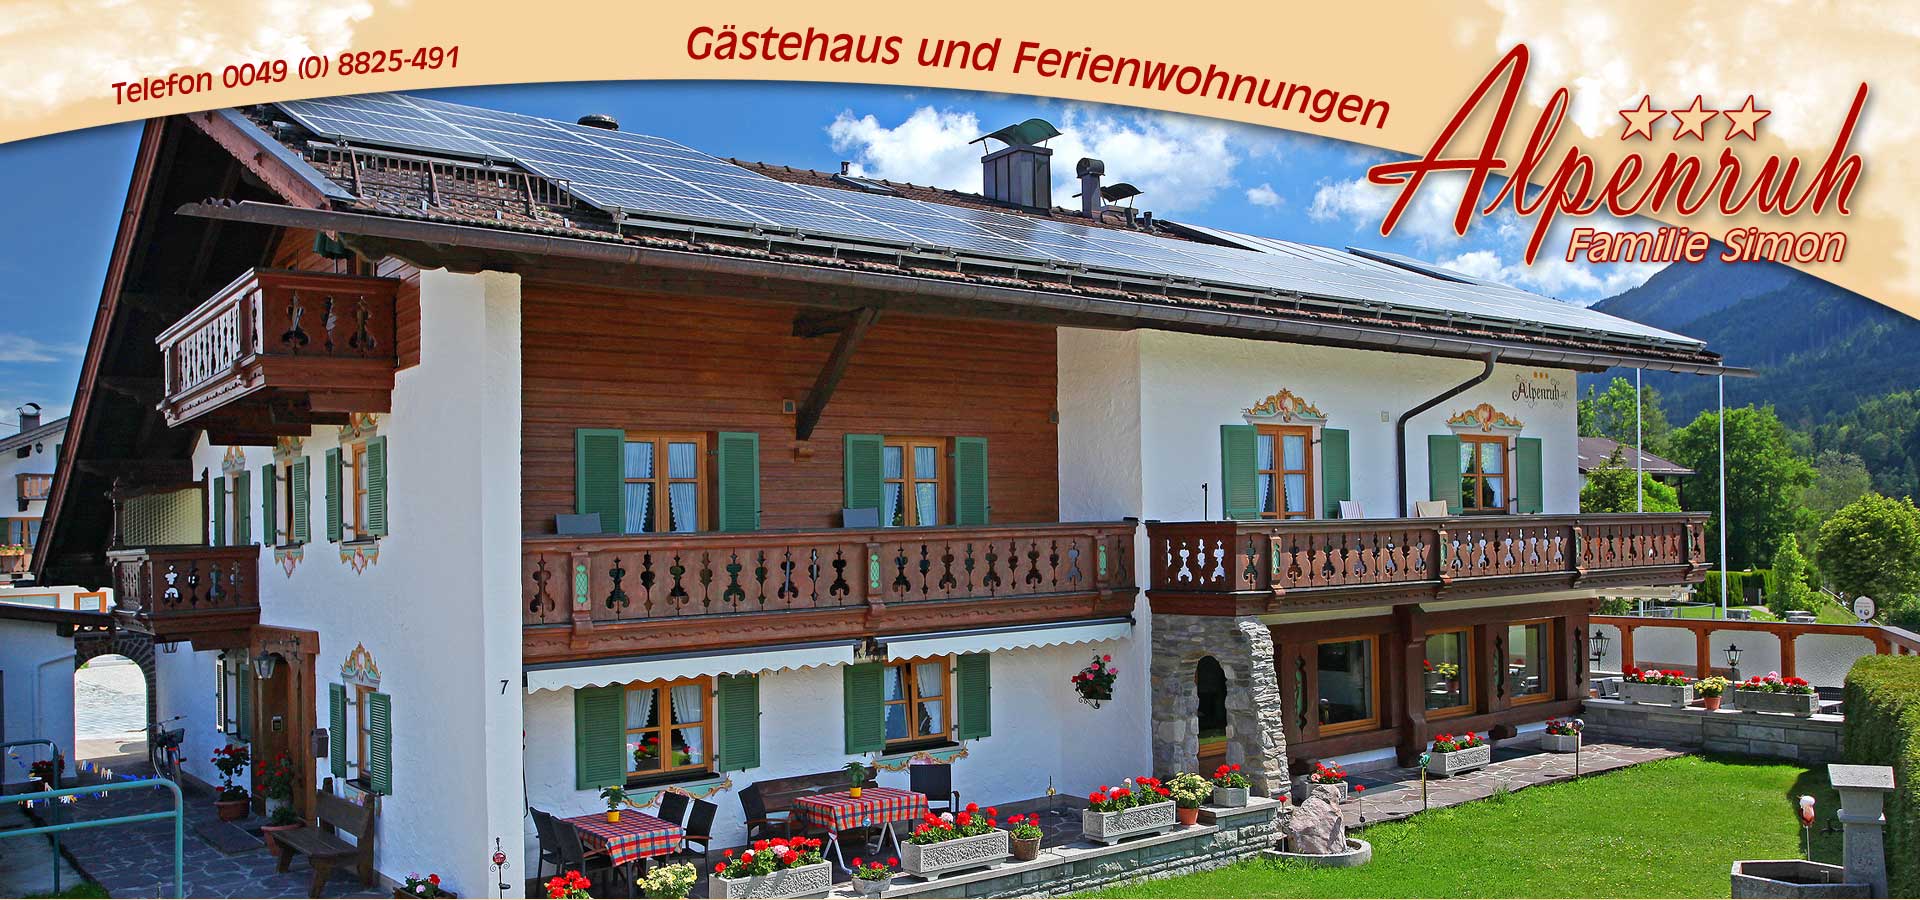 Gästehaus und Ferienwohnungen Alpenruh - Krün